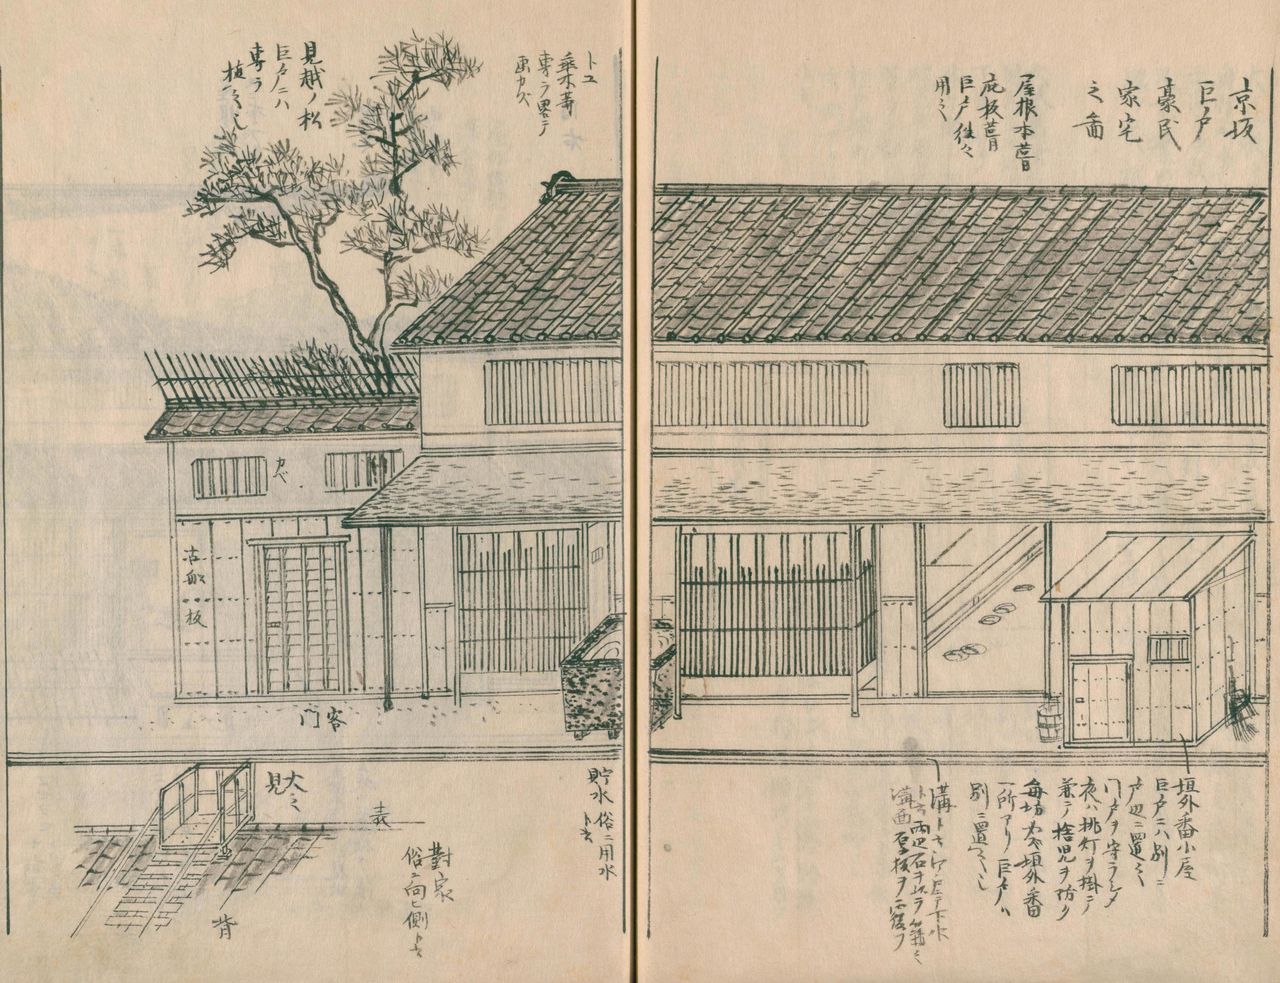 Une maison de ville à Kyoto. À droite, la petite cahute du gardien. Les appartements du maître se trouvent à gauche. L’entrée est étroite, mais s’enfonce profondément dans la maison, caractéristique de la maison de ville de Kyoto, d’où son nom : « le trou d’anguille ».